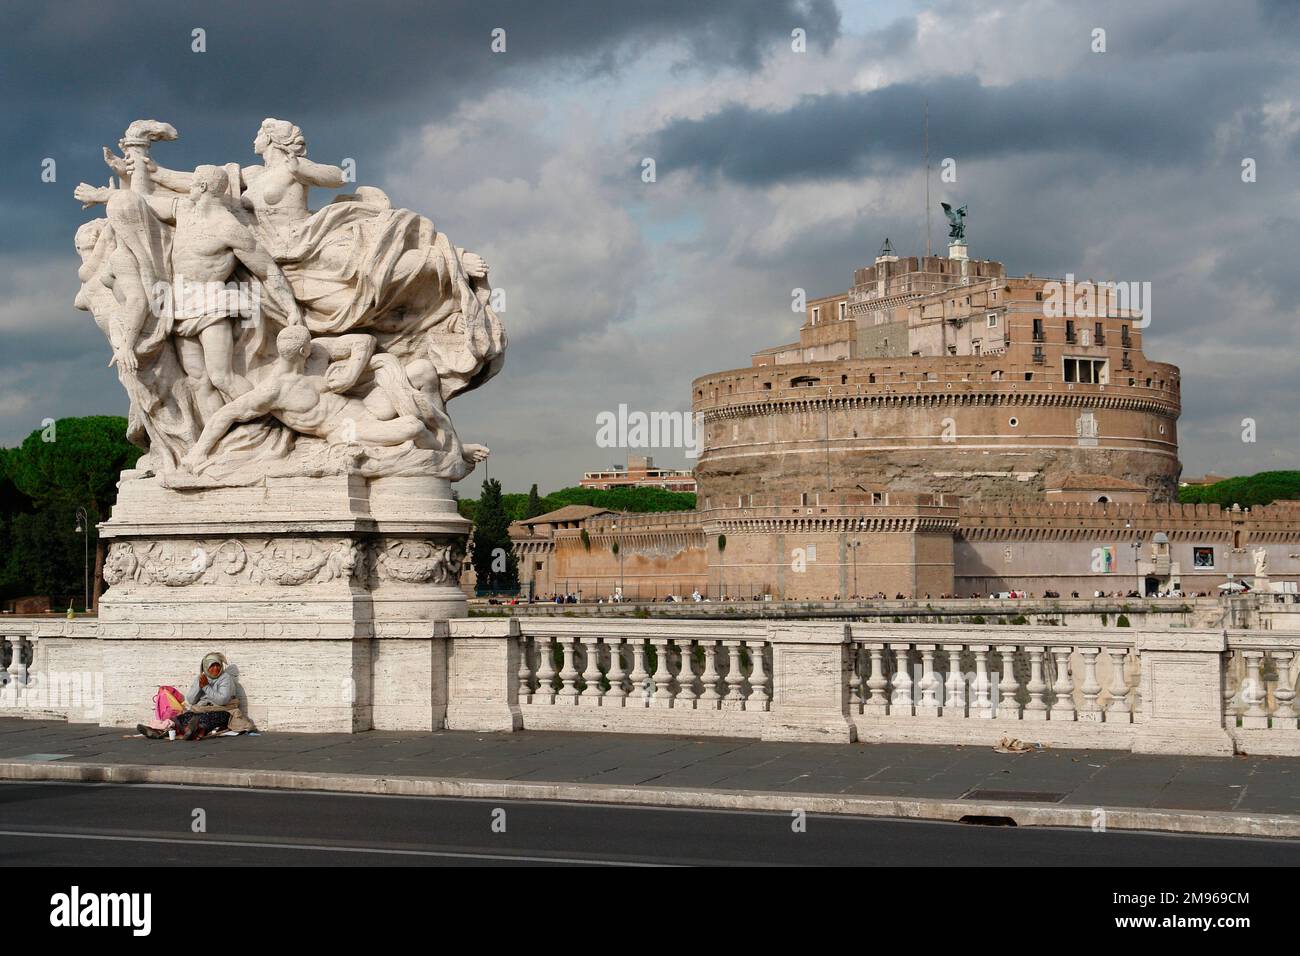 Blick auf eine große Skulptur auf der Vittorio Emanuele II Brücke über den Tiber, mit dem Castel Sant'Angelo (manchmal auch als Mausoleum des Hadrian bekannt) in der Ferne auf der rechten Seite, in Rom, Italien. Stockfoto